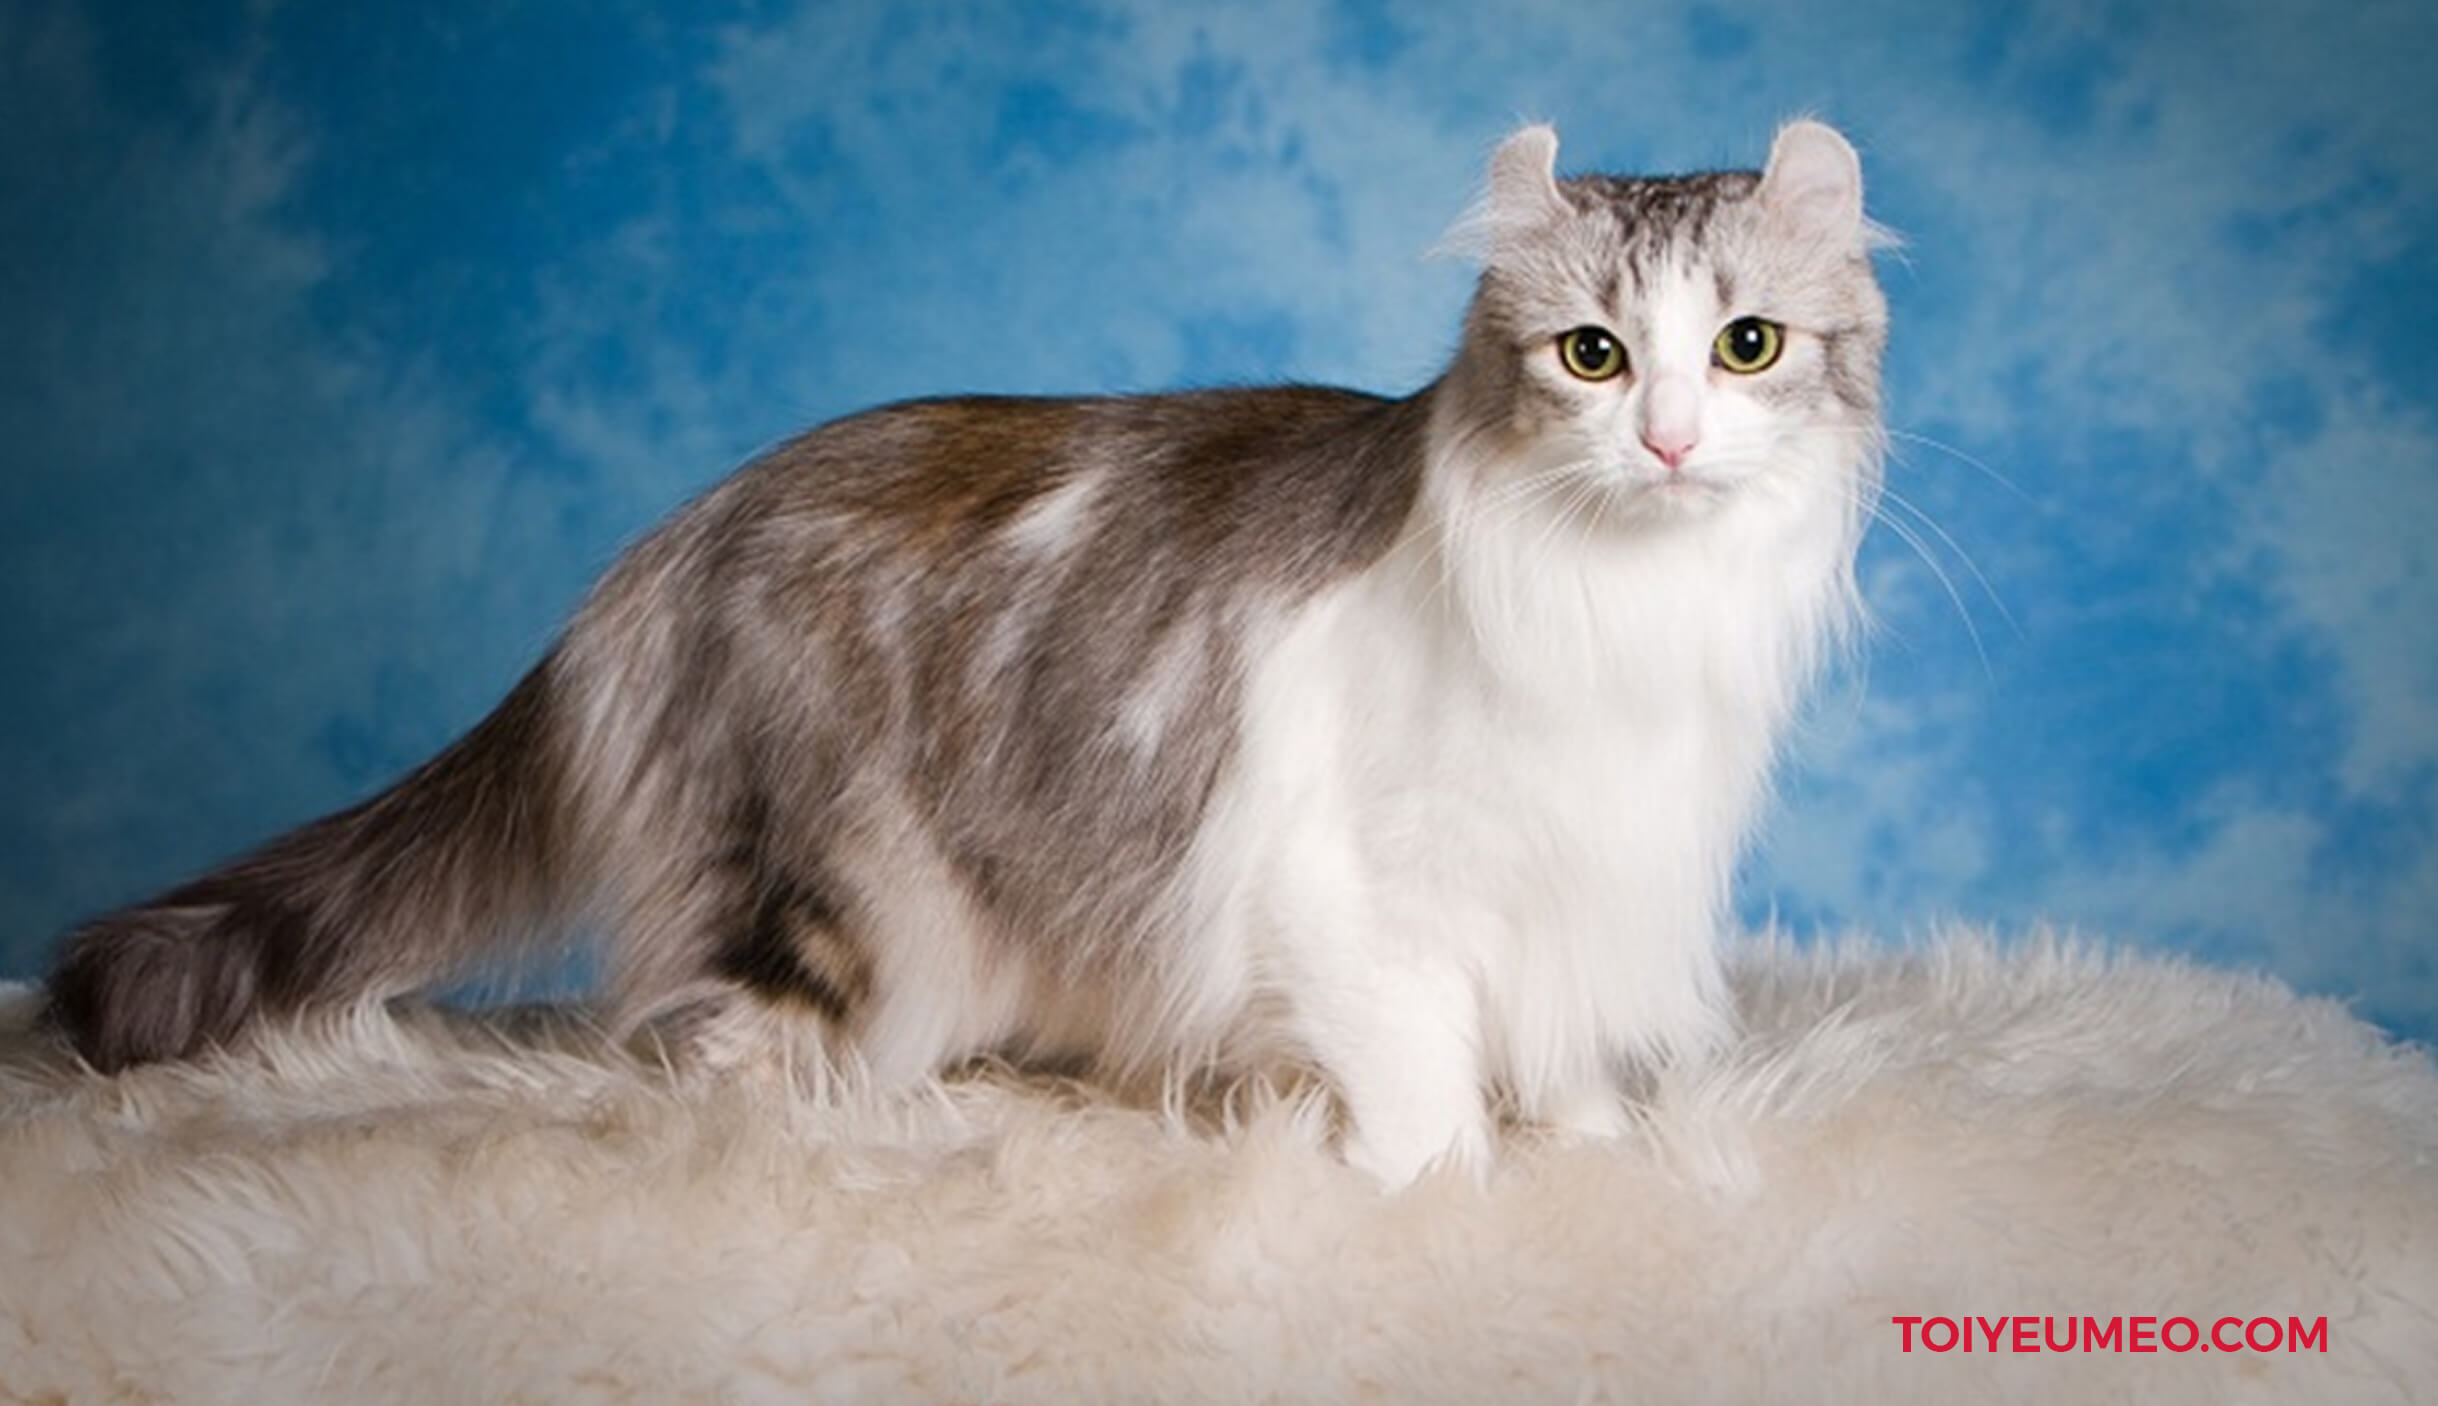 Mèo tai xoắn là một giống mèo đột biến tự nhiên, xuất hiện tại Mỹ